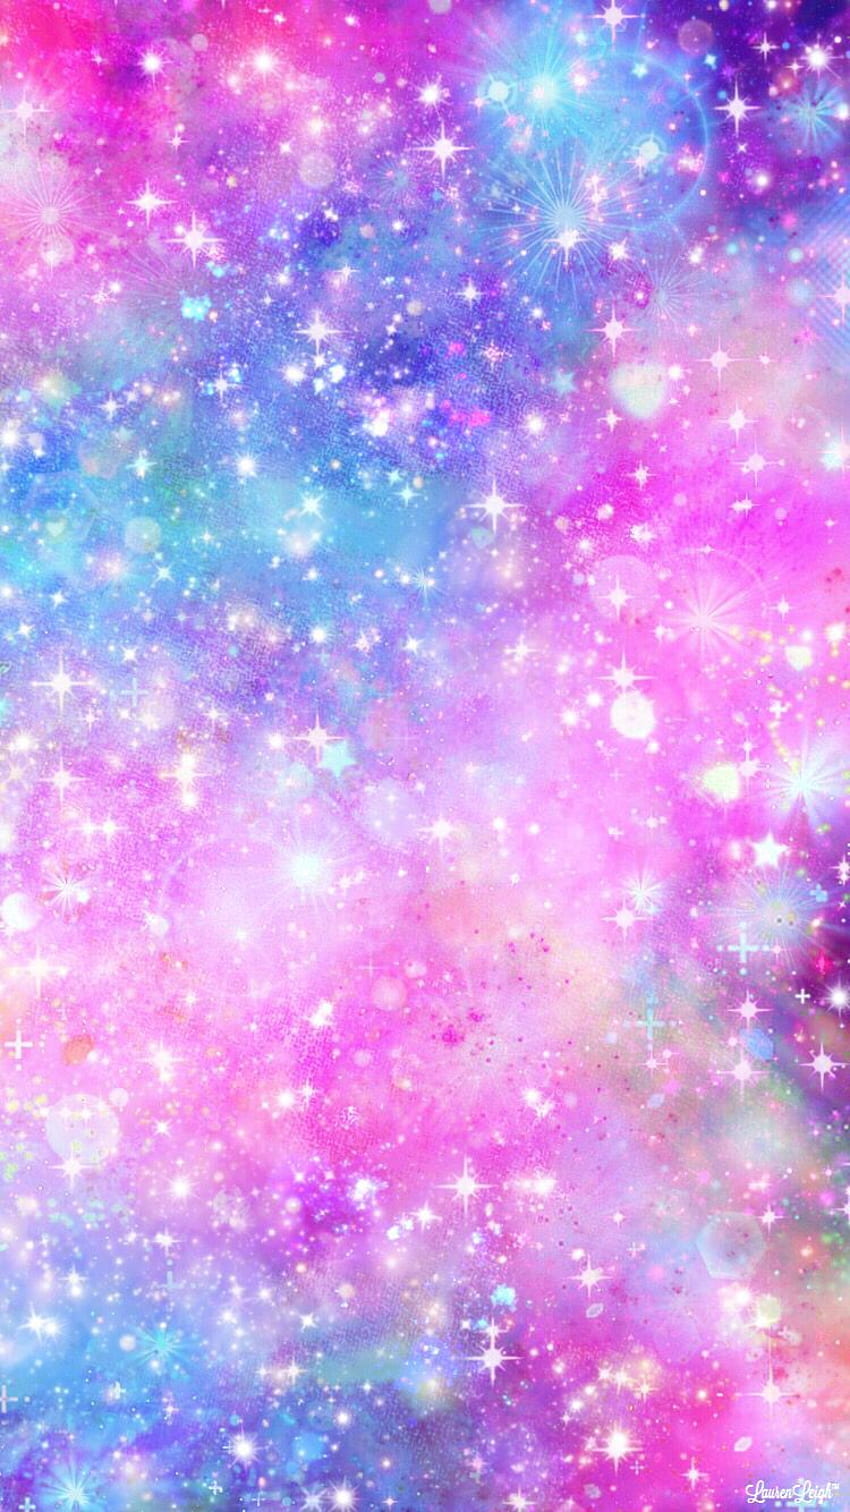 Với những ai yêu thích những gam màu tươi sáng và nữ tính, những bức ảnh về Pastel Galaxy, Purple Galaxy hay Girly Pink chắc chắn sẽ khiến bạn yêu ngay từ cái nhìn đầu tiên. Hãy cùng lắng nghe tiếng tim rạo rực khi truy cập và ngắm nhìn những bức ảnh đầy màu sắc này.